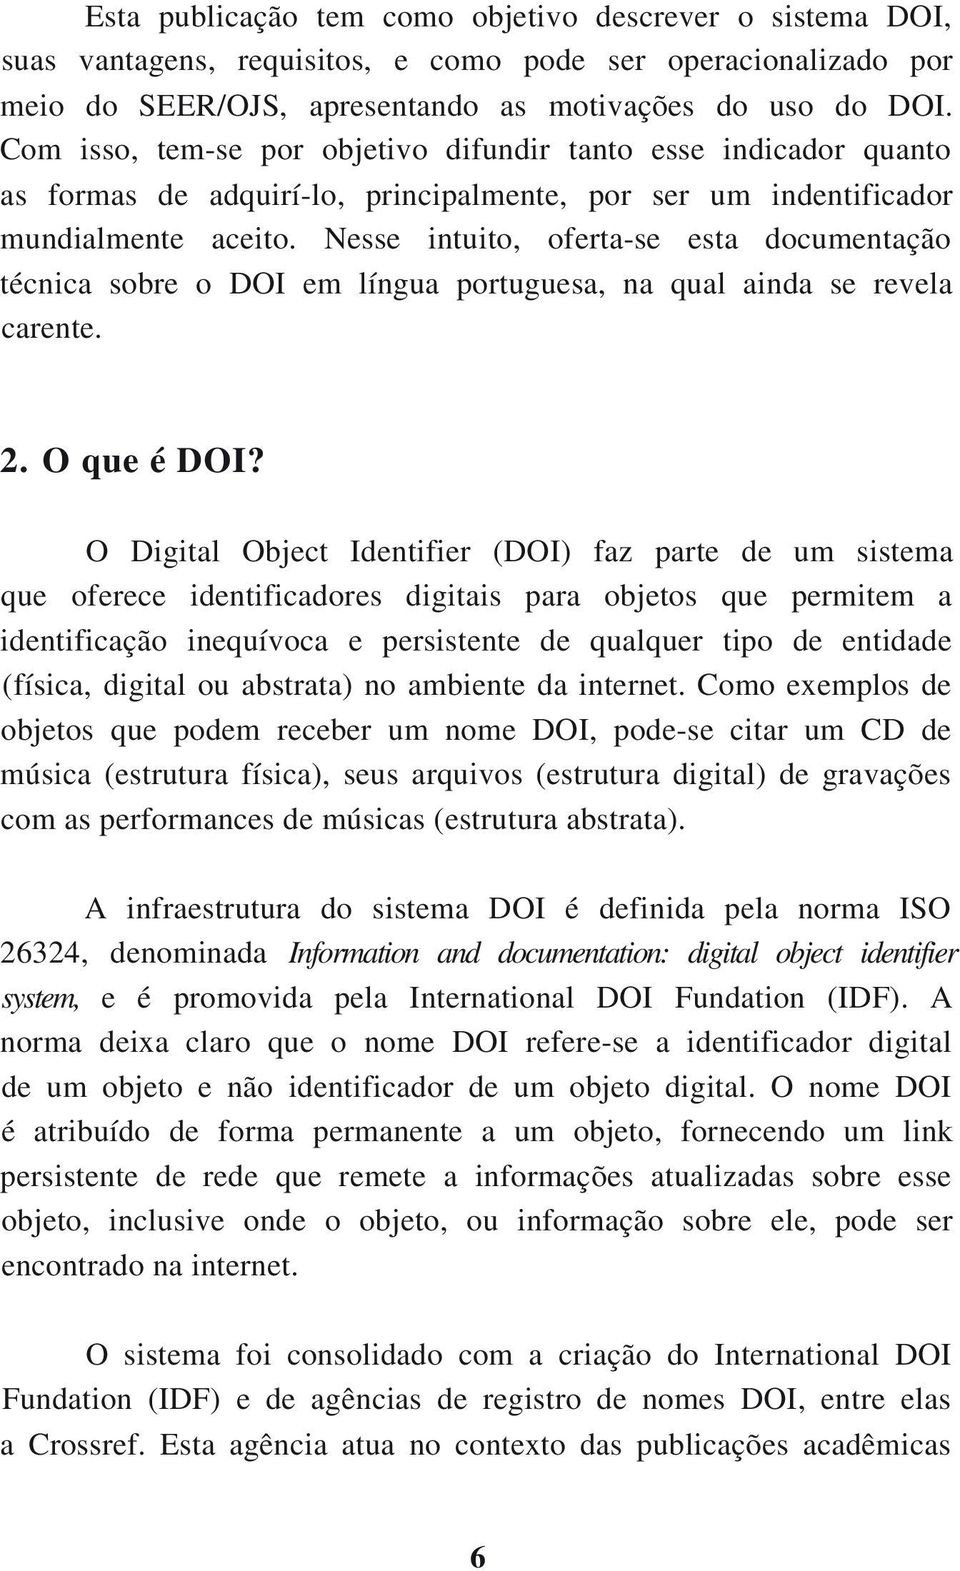 Nesse intuito, oferta-se esta documentação técnica sobre o DOI em língua portuguesa, na qual ainda se revela carente. 2. O que é DOI?